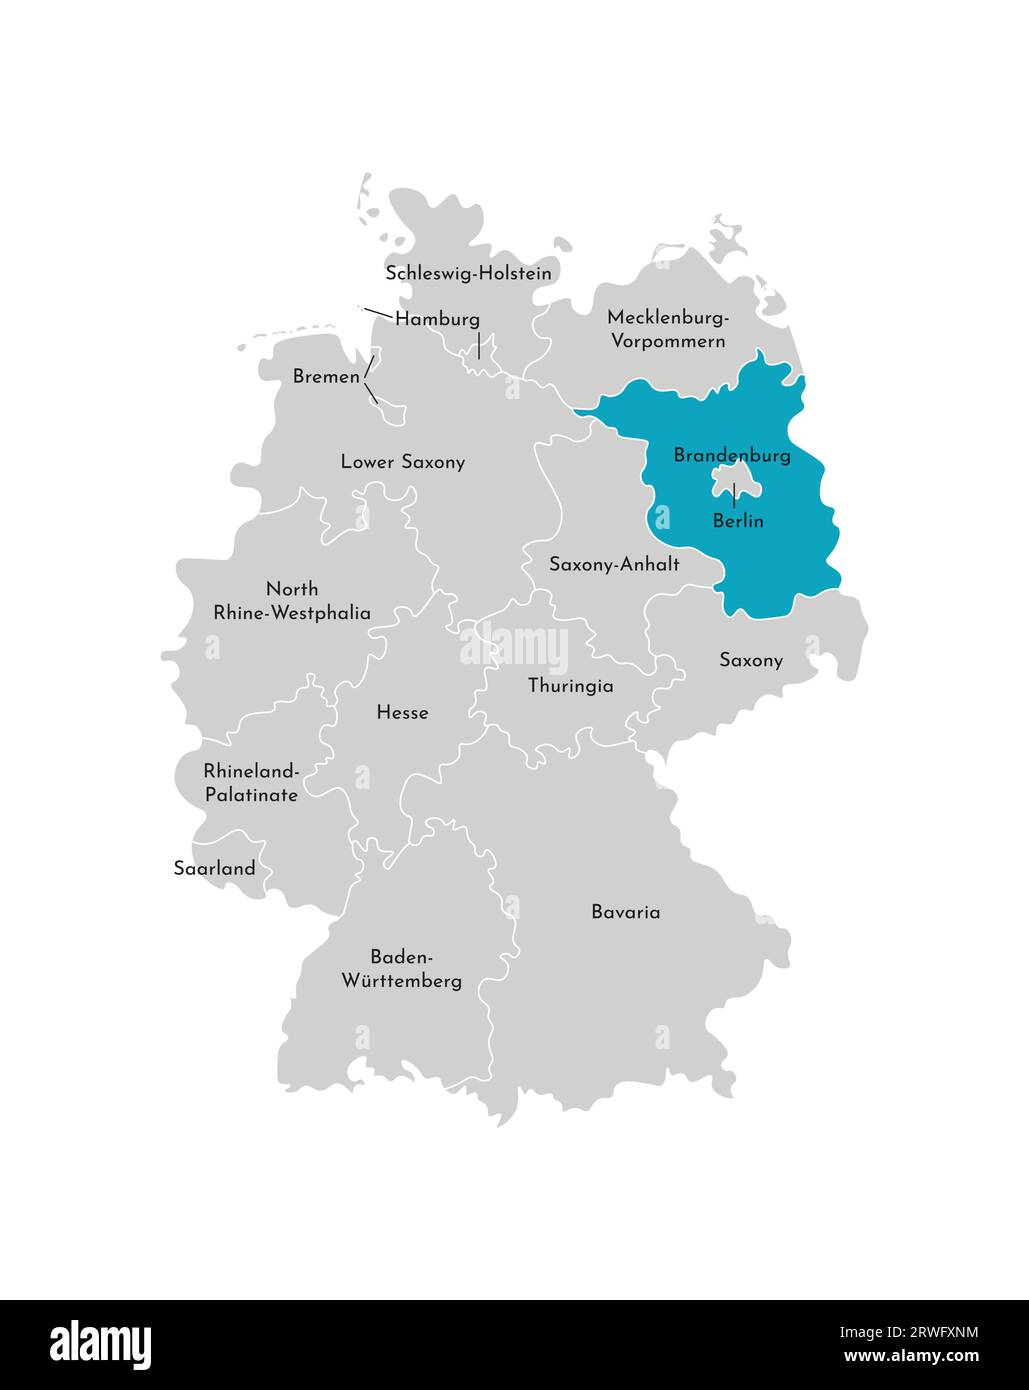 Illustrazione vettoriale isolata della mappa amministrativa semplificata della Germania. Silhouette blu di Brandeburgo (stato). Silhouette grigie. Contorno bianco Illustrazione Vettoriale